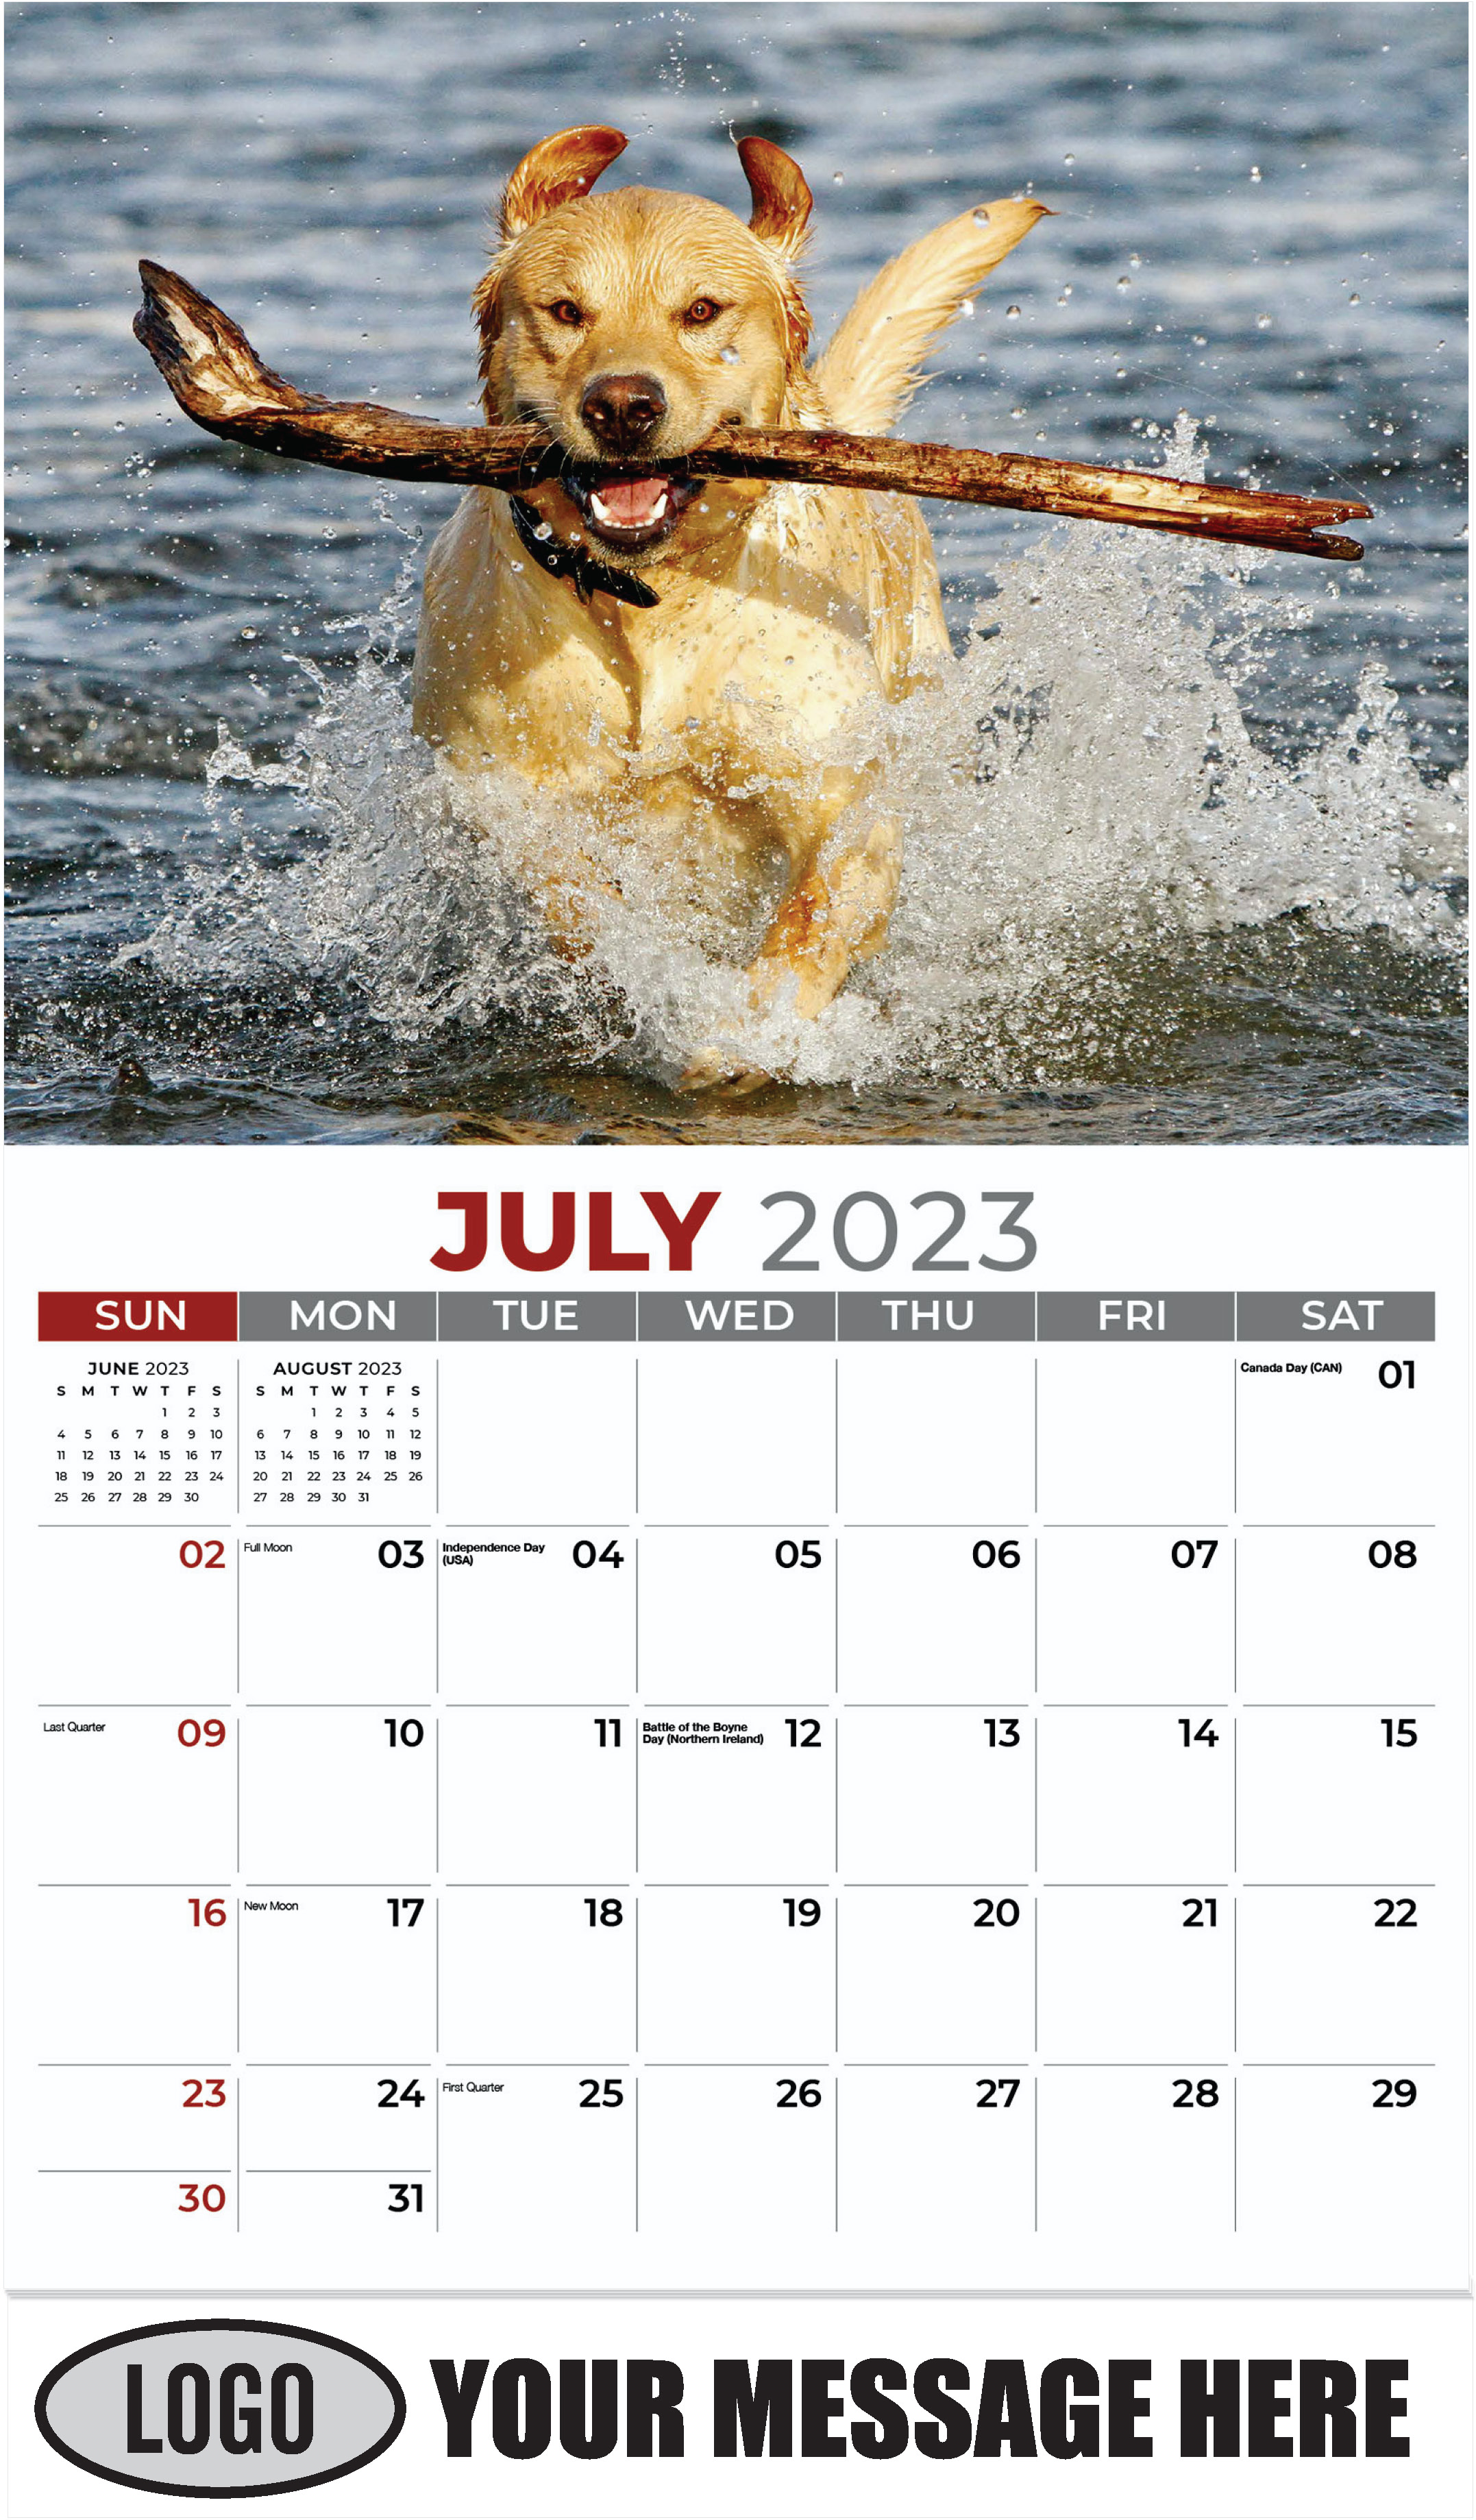 Labrador Retriever - July - Pets 2023 Promotional Calendar